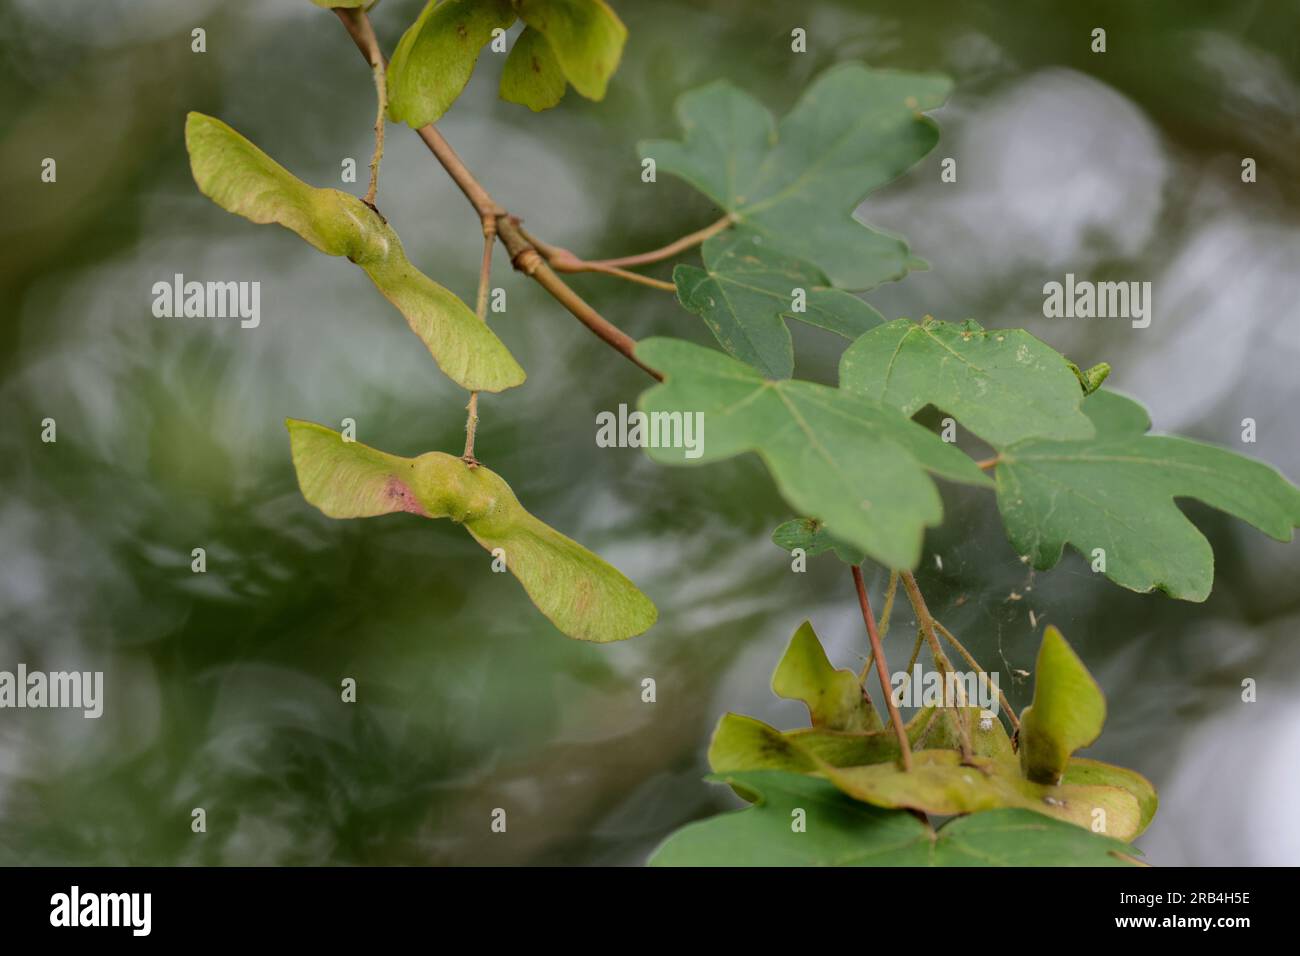 Sycamore Acer pseudoplatanus, cinco hojas lobuladas con márgenes dentados con vainas de semillas como pares alados de acción de helicóptero cuando se caen juntos o se dividen Foto de stock